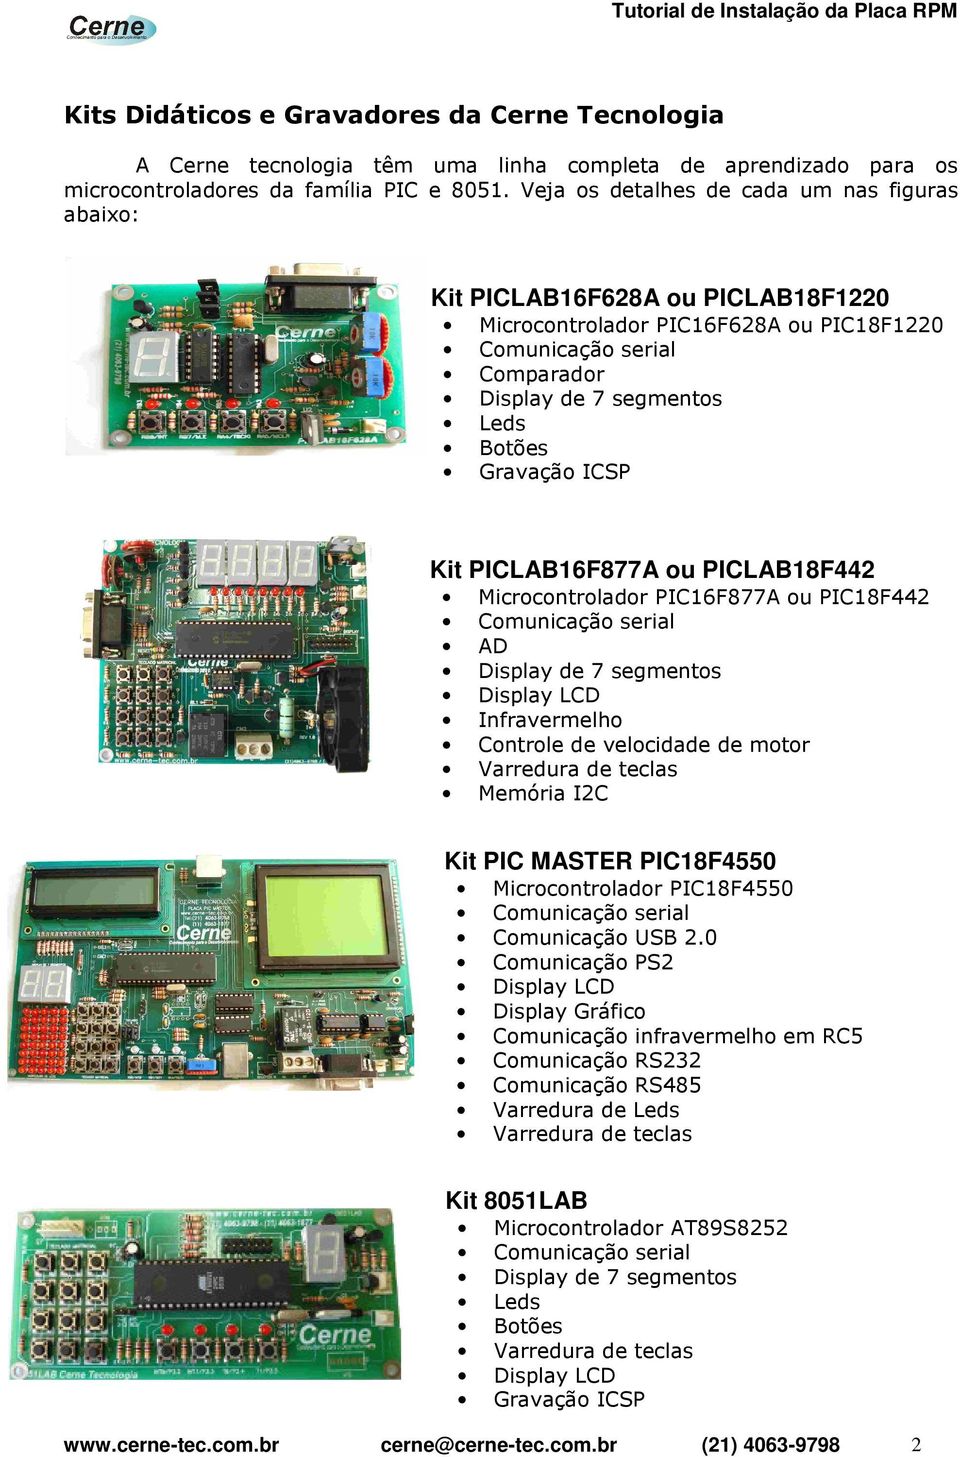 PICLAB18F442 Microcontrolador PIC16F877A ou PIC18F442 AD Infravermelho Controle de velocidade de motor Varredura de teclas Memória I2C Kit PIC MASTER PIC18F4550 Microcontrolador PIC18F4550